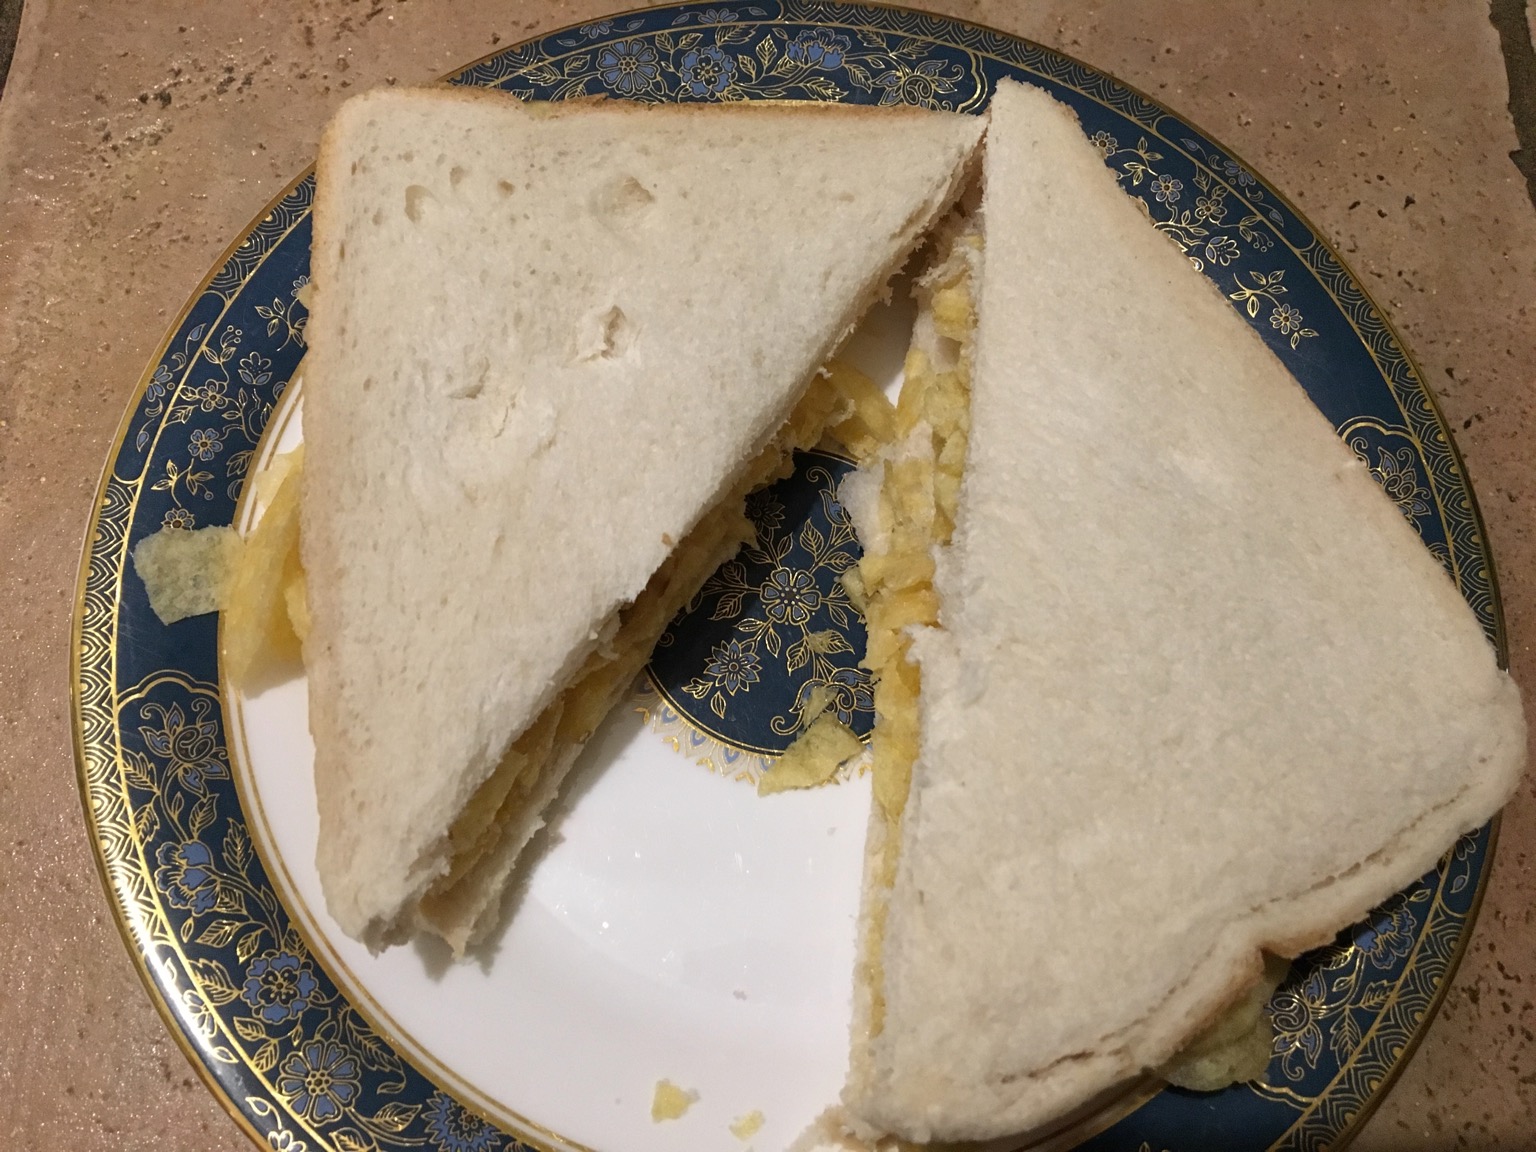 Diagonally-cut white crisp sandwich